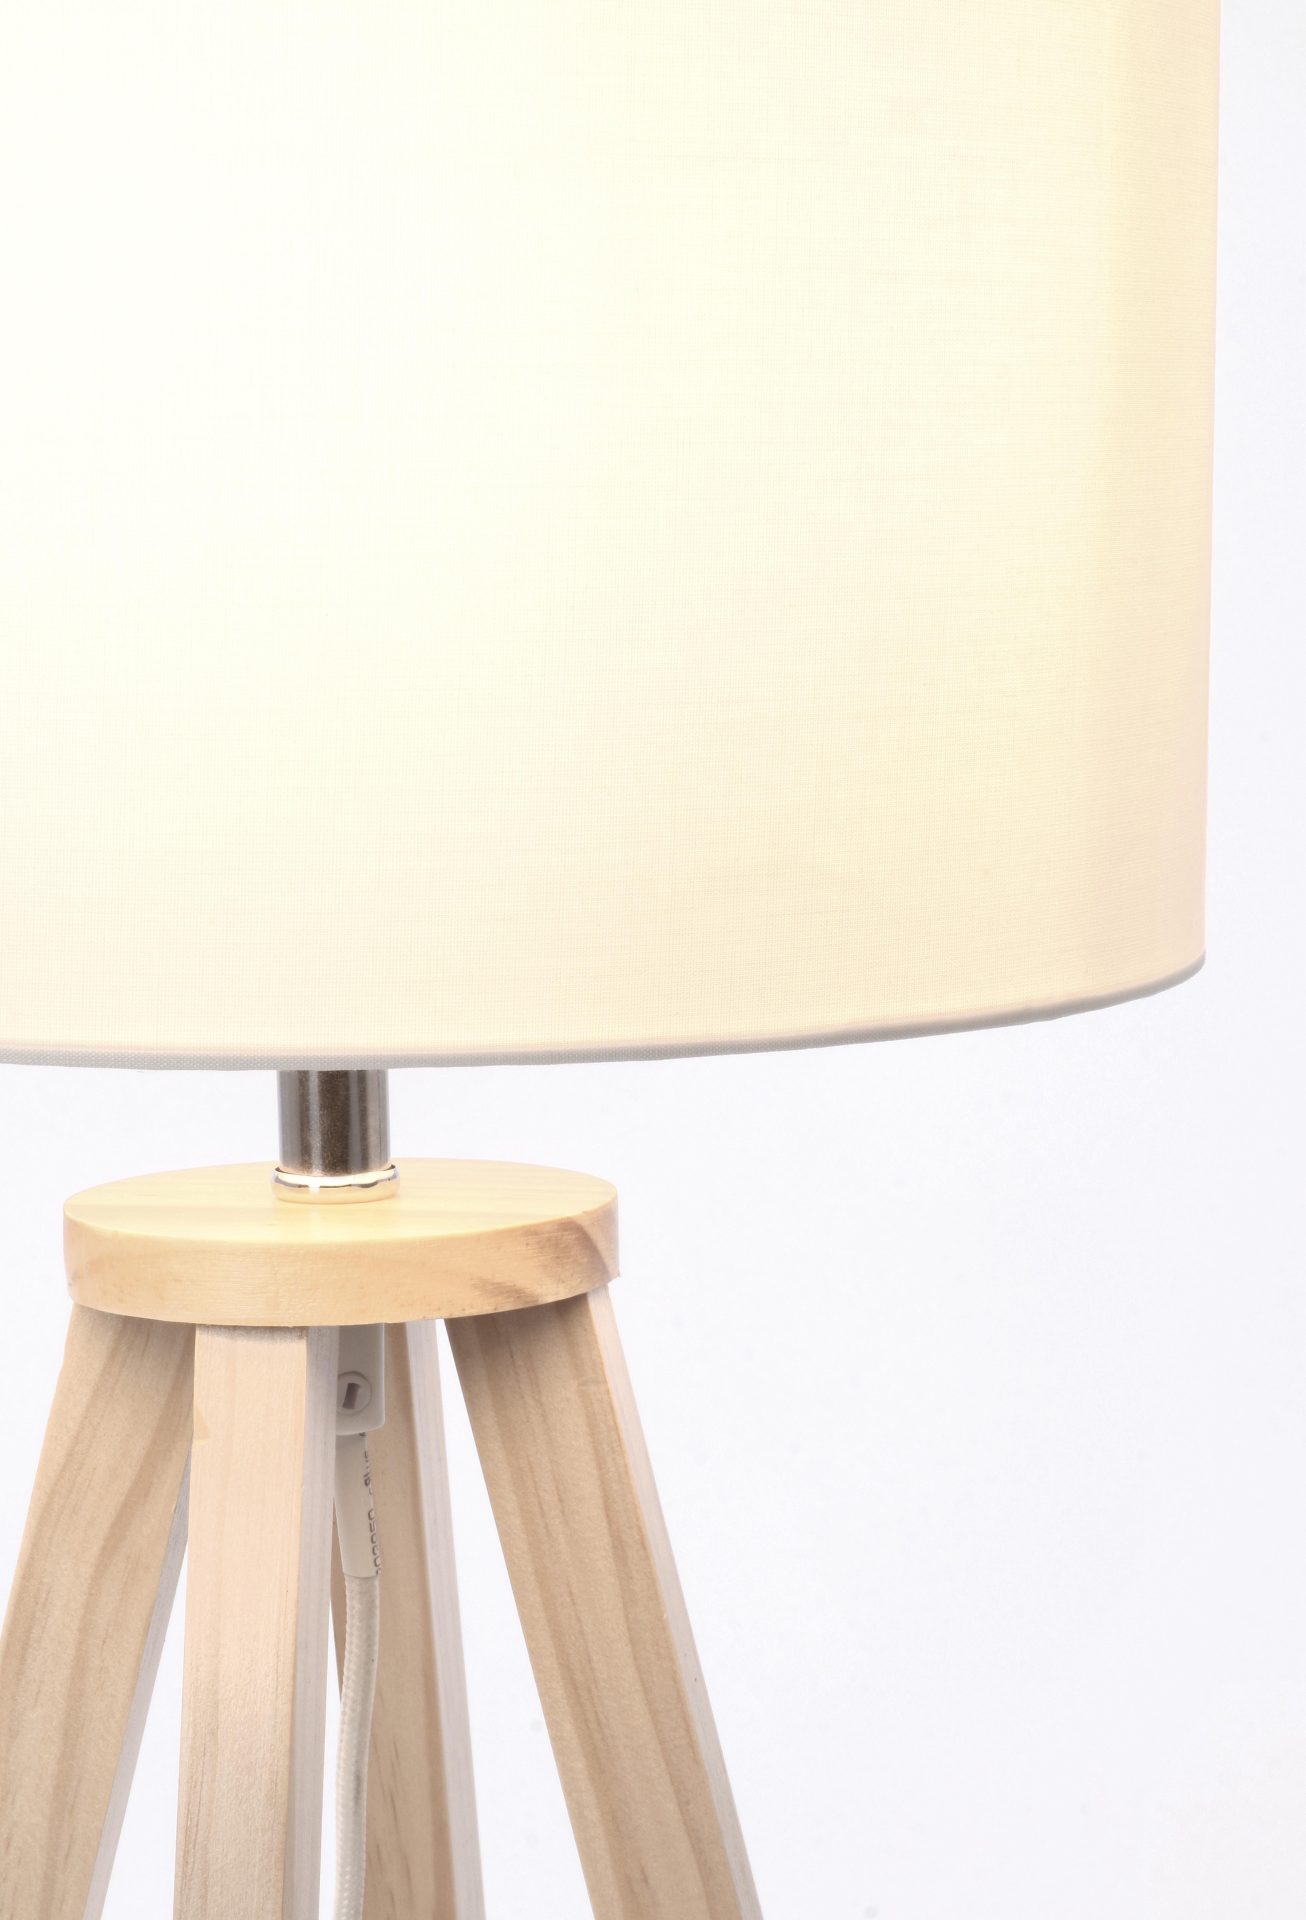 Die Tischleuchte Stoccolma überzeugt mit ihrem klassischen Design. Gefertigt wurde sie aus Kiefernholz, welches einen natürlichen Farbton besitzt. Der Lampenschirm ist aus Terilene und hat eine weiße Farbe. Die Lampe besitzt eine Höhe von 48,5 cm.